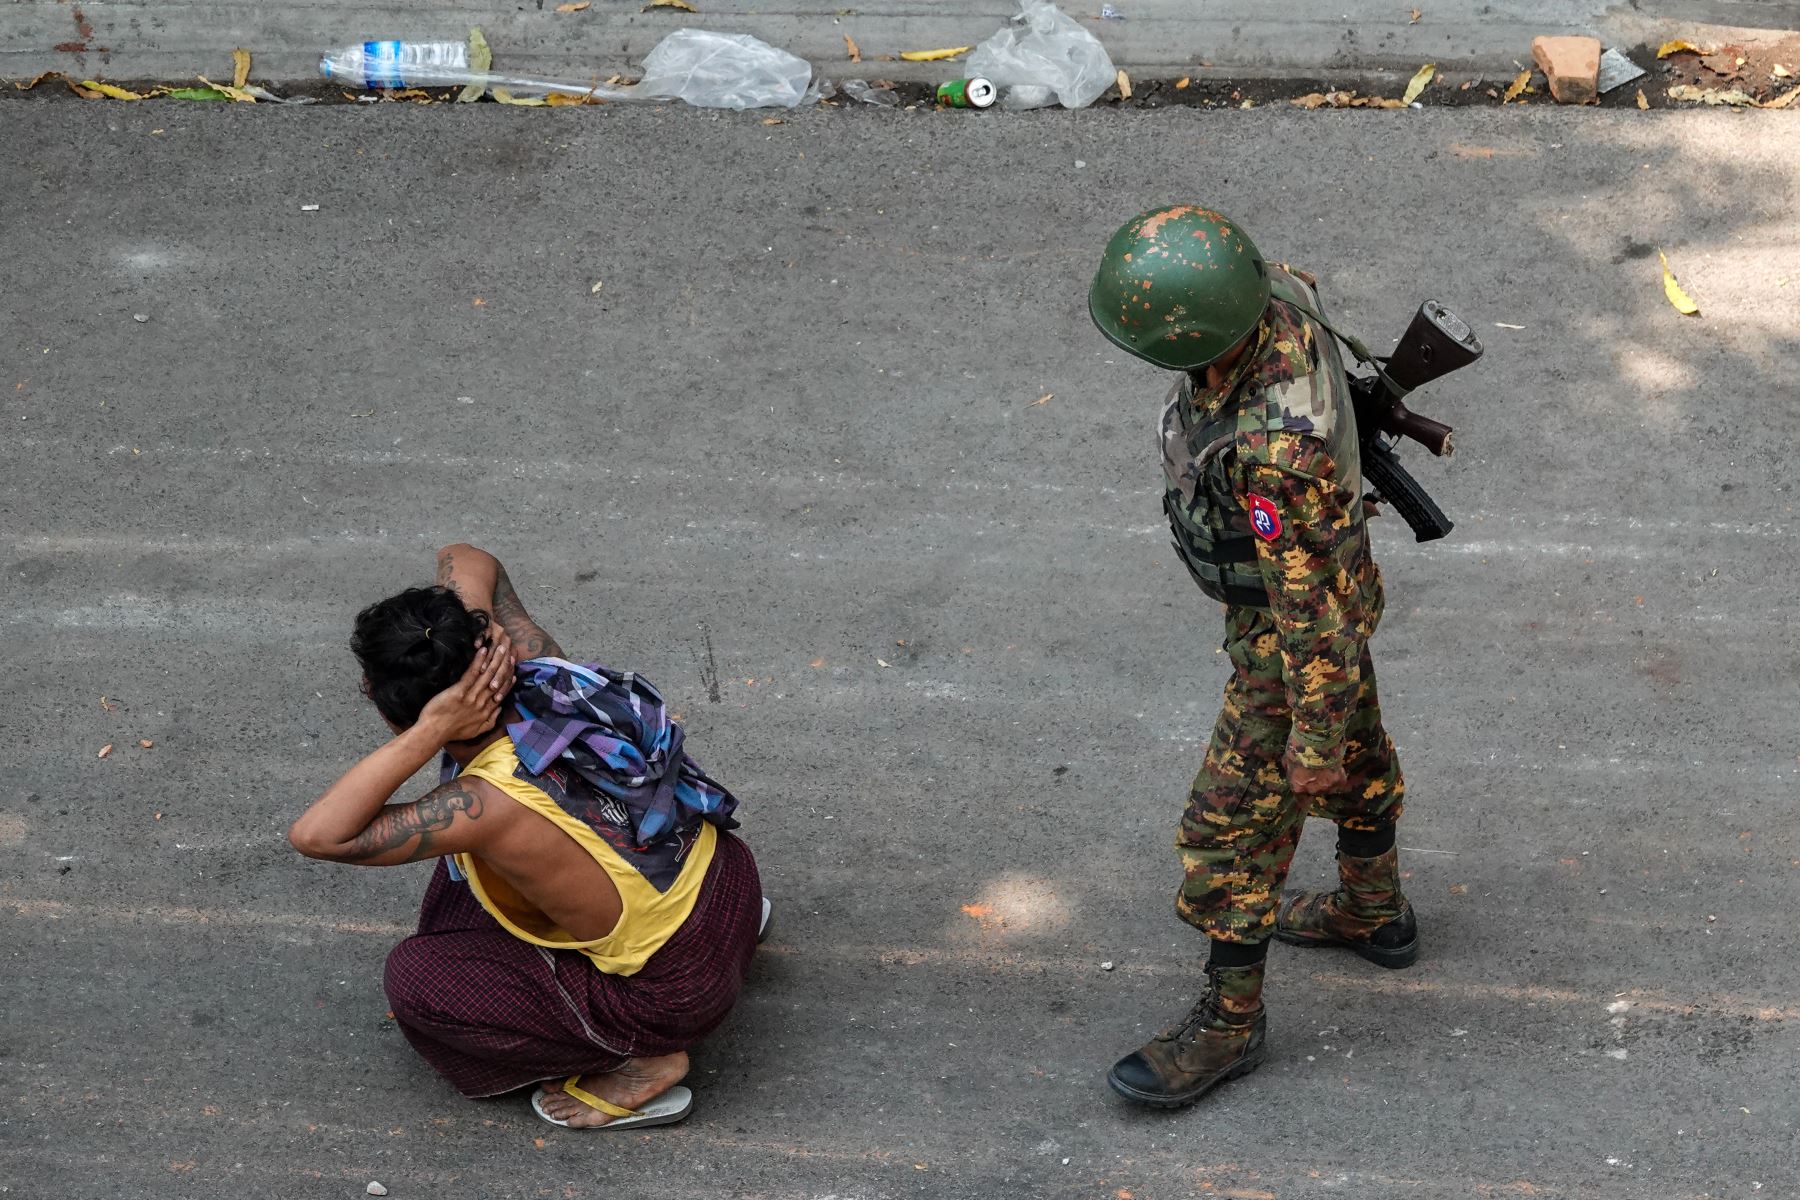 La jornada del miércoles fue "la más sangrienta" registrada en Birmania desde el golpe de Estado del 1 de febrero, subrayó la emisaria. Foto: AFP